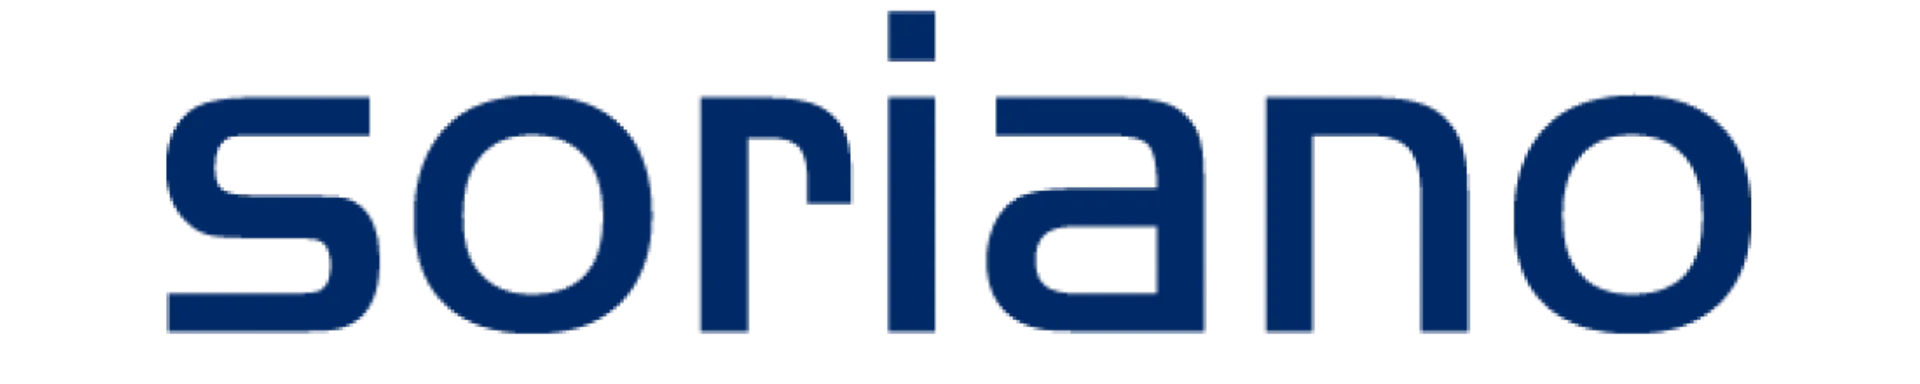 BRICOLAJE SORIANO logo